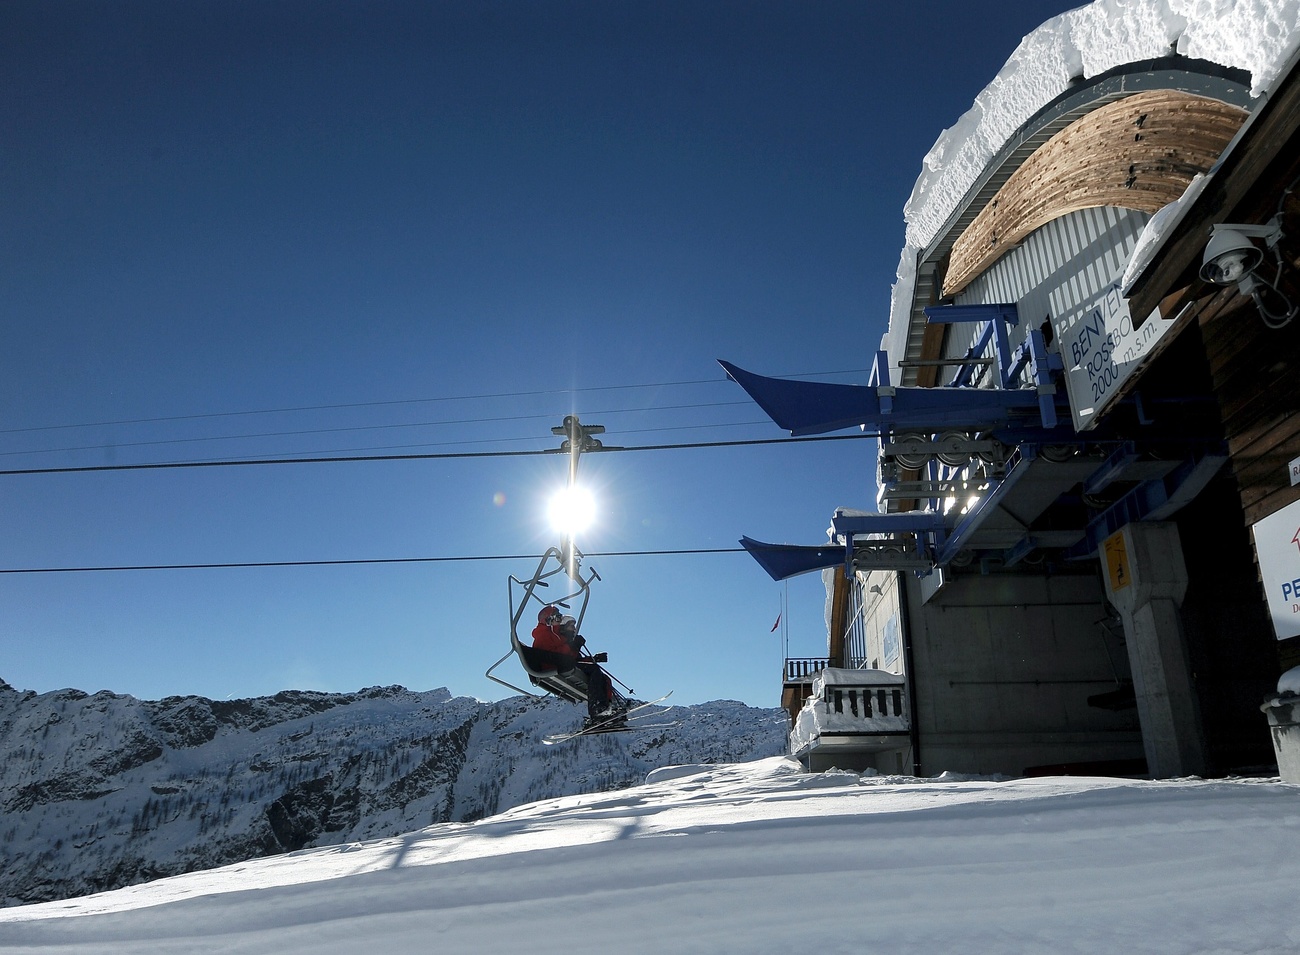 La stazione dell'impianto di risalita di Bosco Gurin con a bordo uno sciatore.